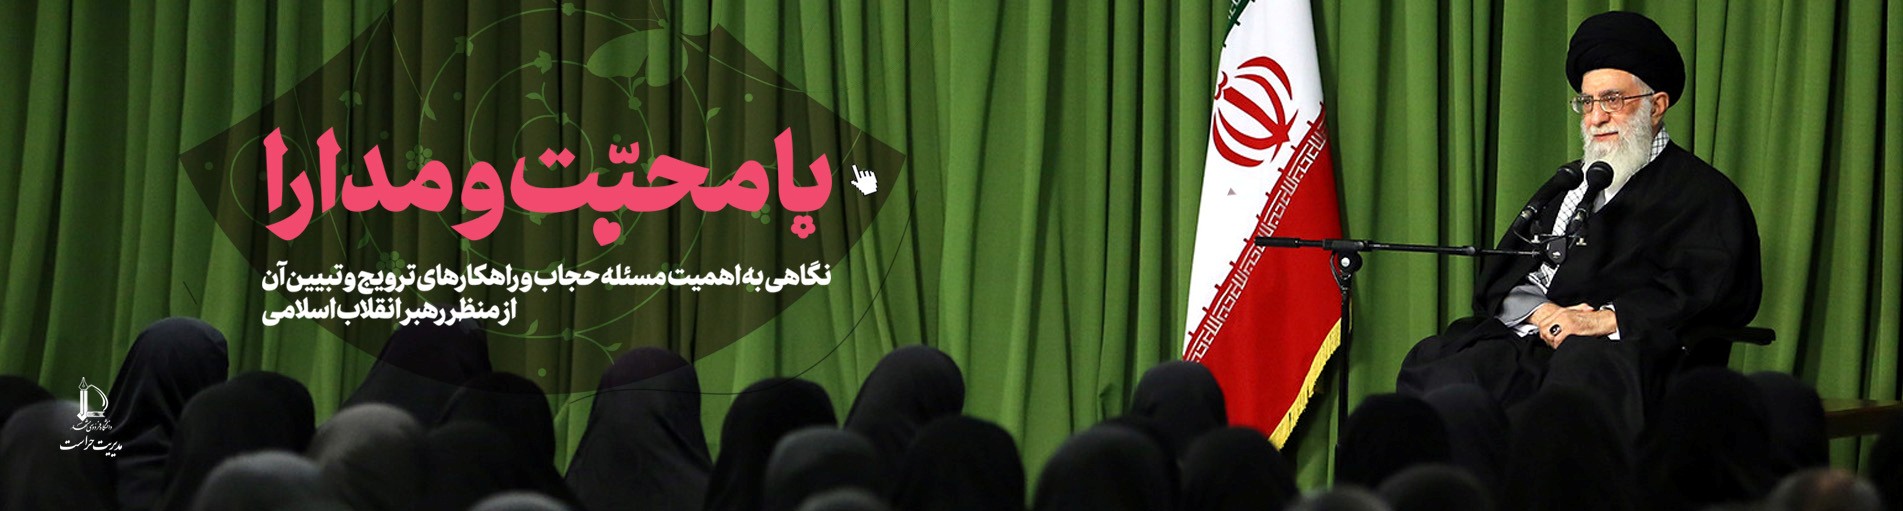  با محبت و مدارا | اهمیت «حجاب» از منظر رهبر انقلاب اسلامی 